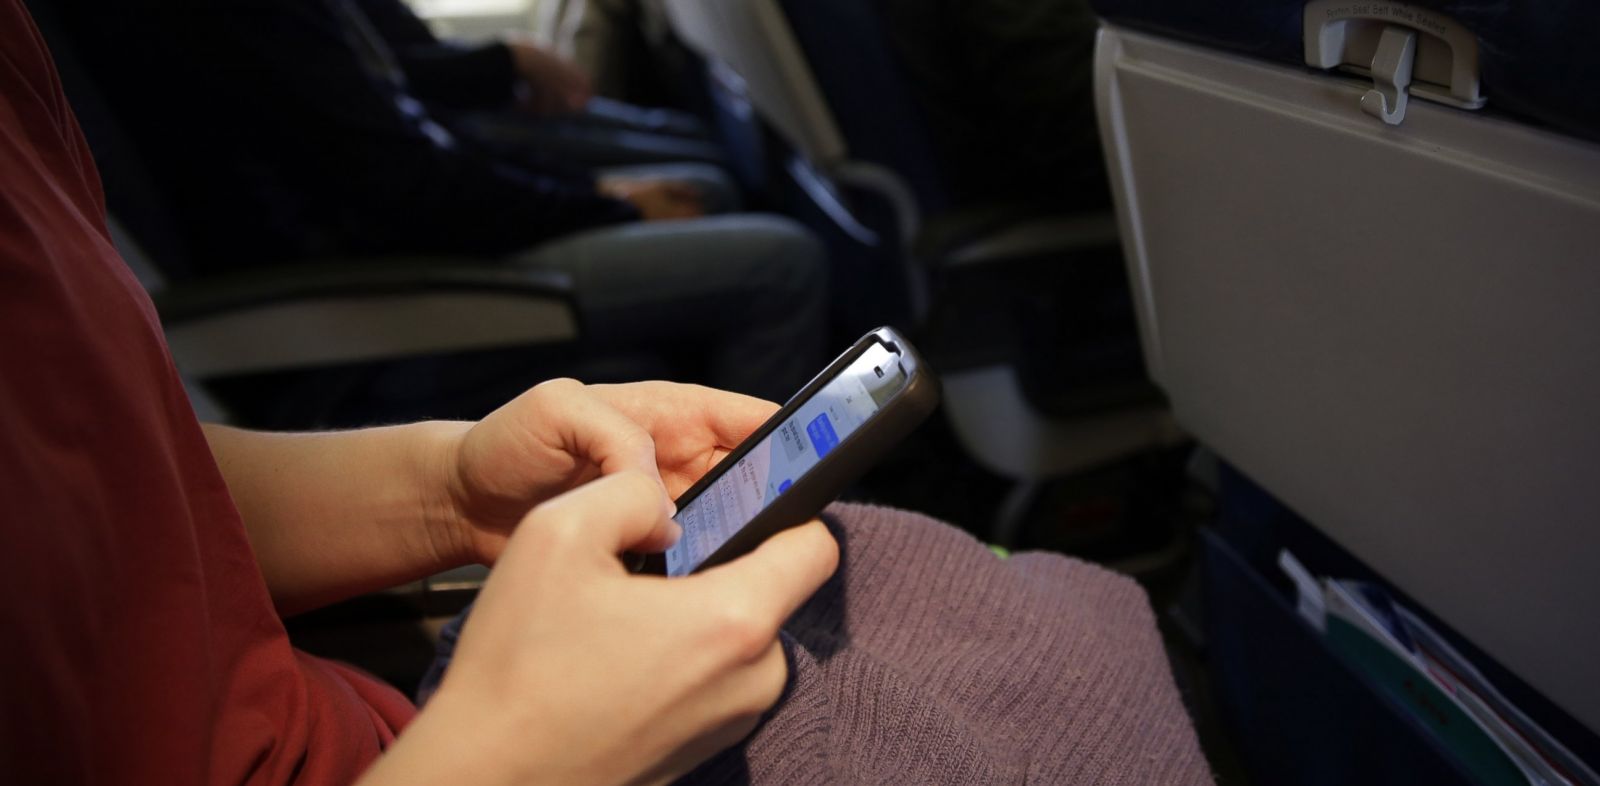 Amerikan istihbaratı uçak yolcularının telefonuna sızmış